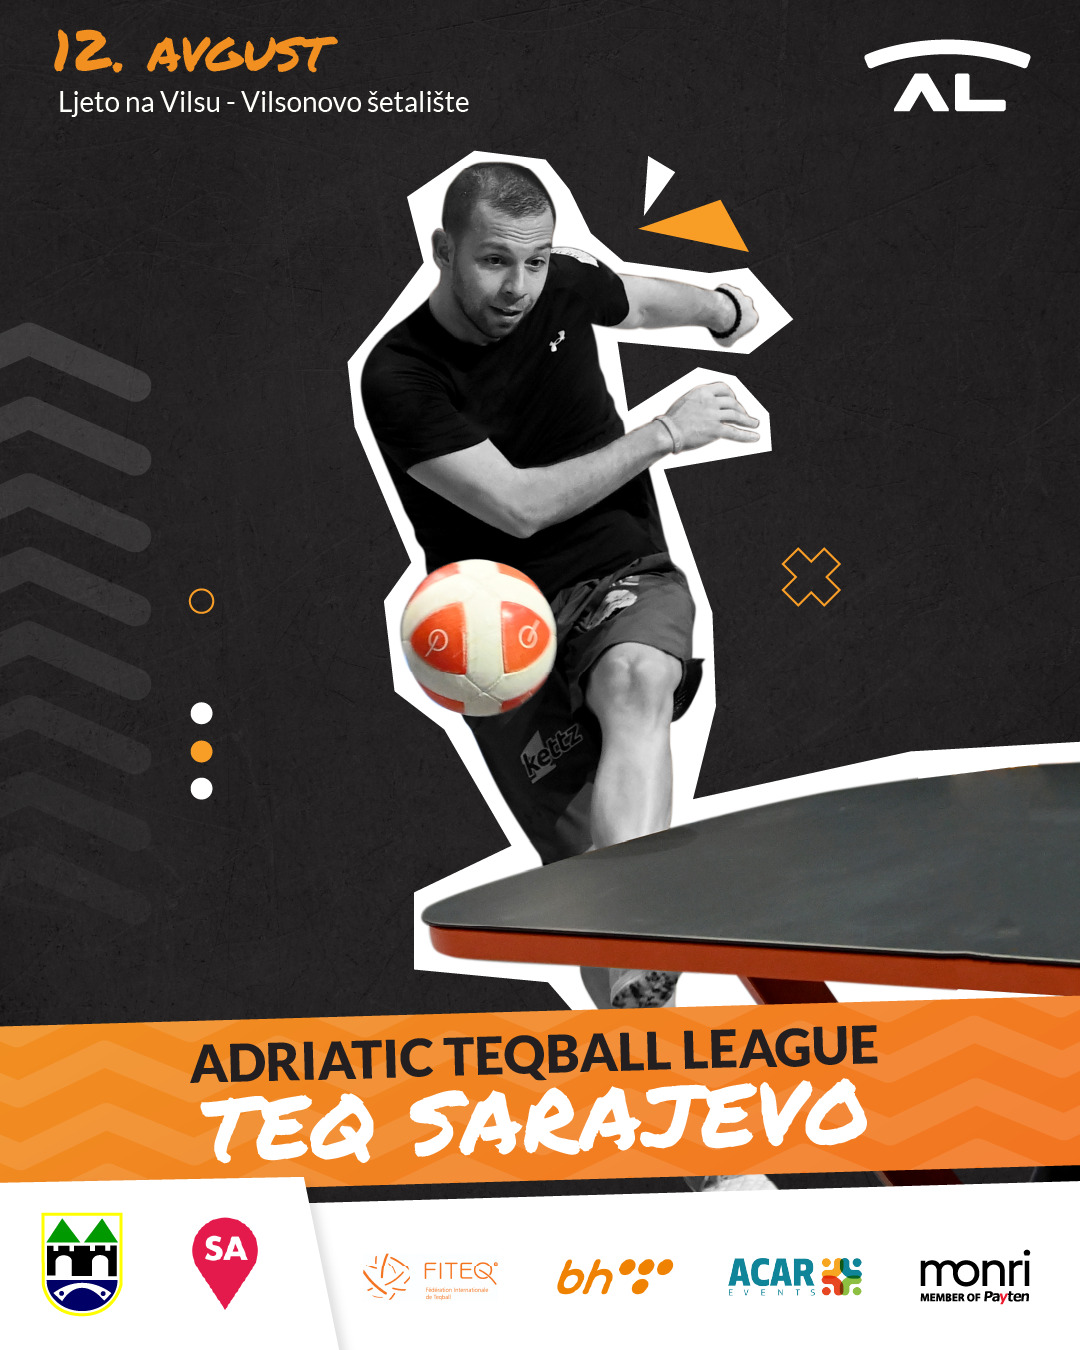 Jadranska Teqball liga stiže u Sarajevo, garantovana sjajna zabava na Vilsonovom šetalištu